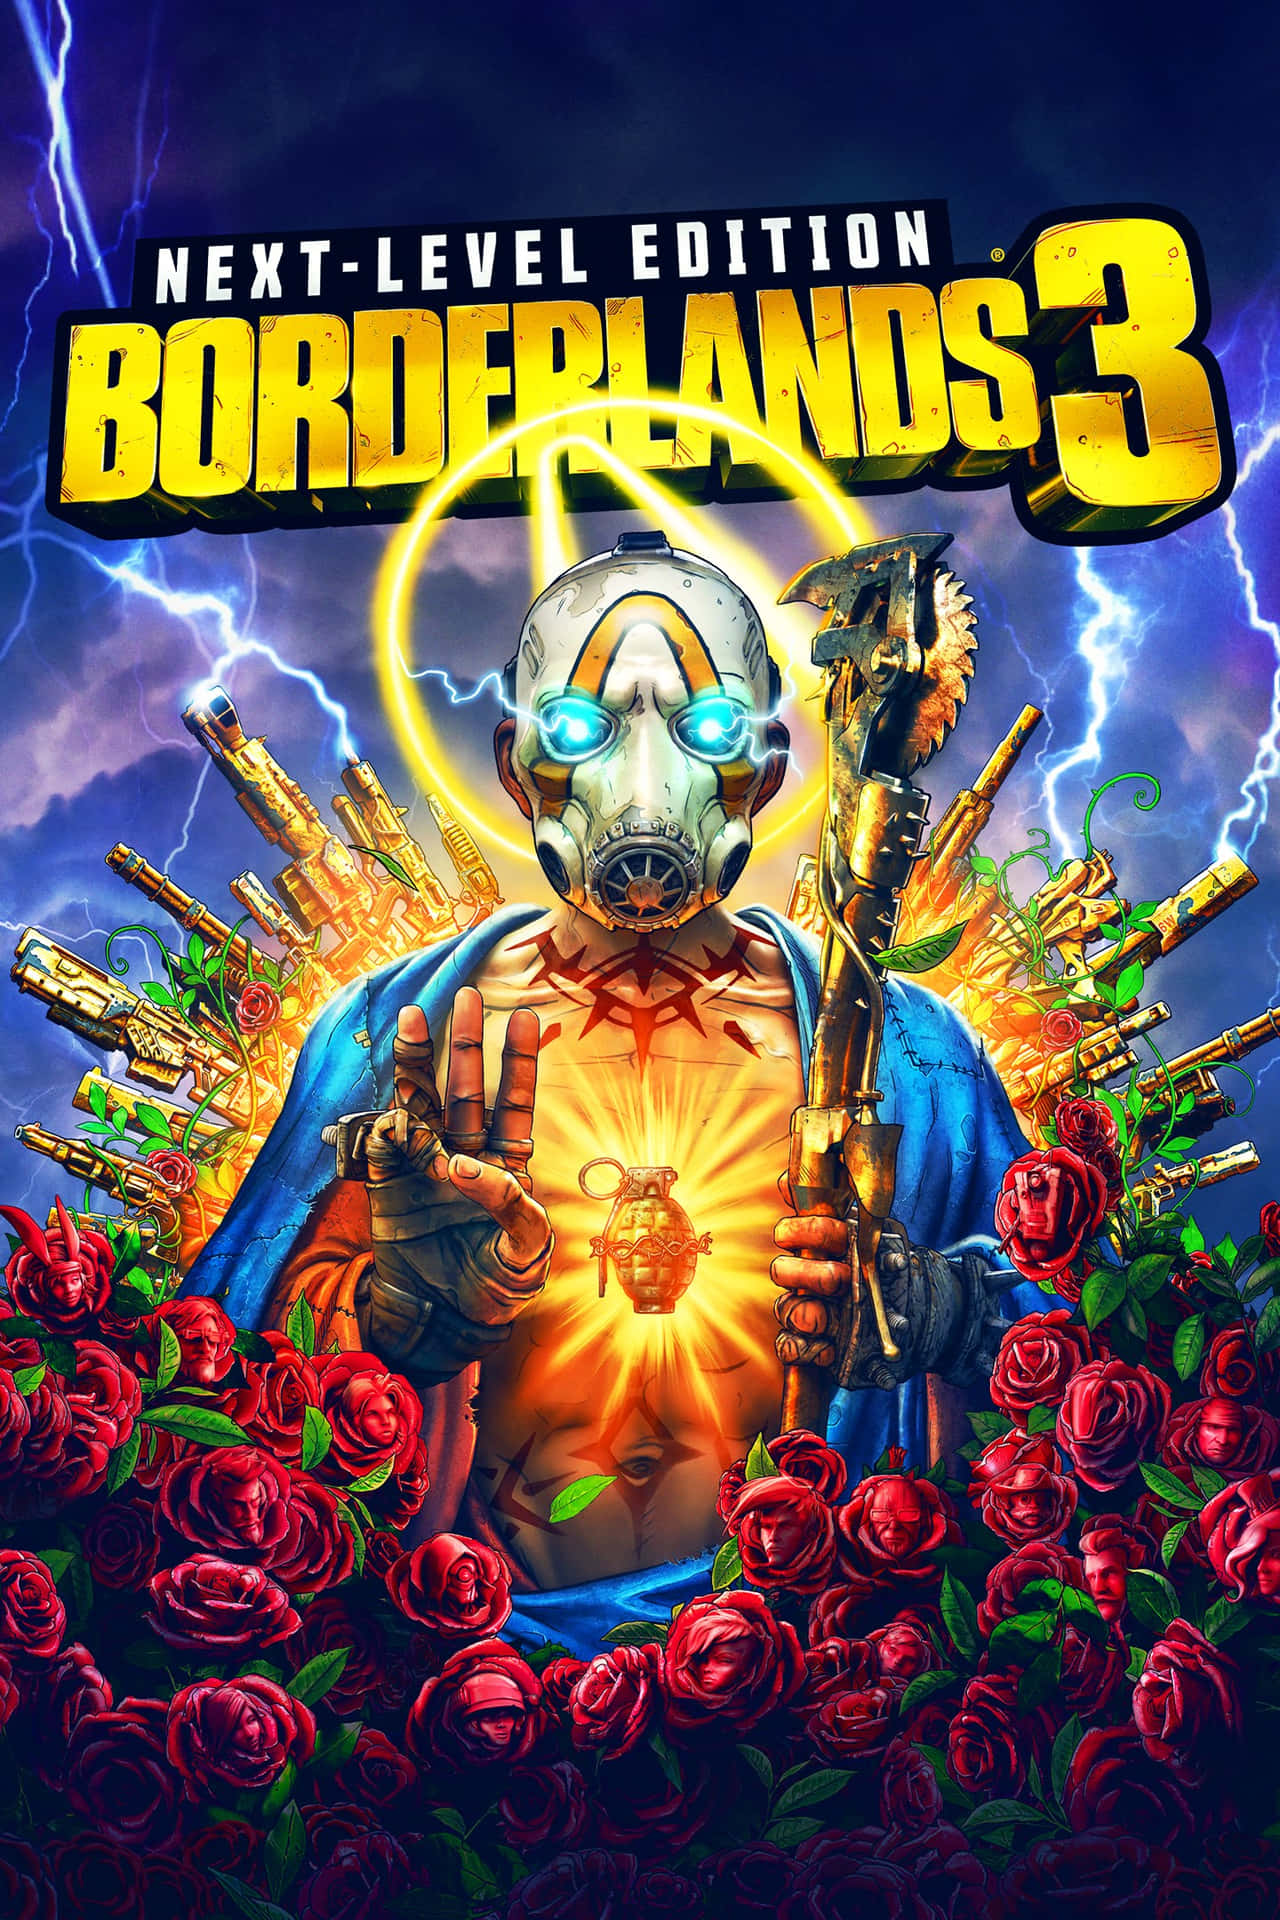 Enjoy Borderlands 3 on the Pixel 3XL